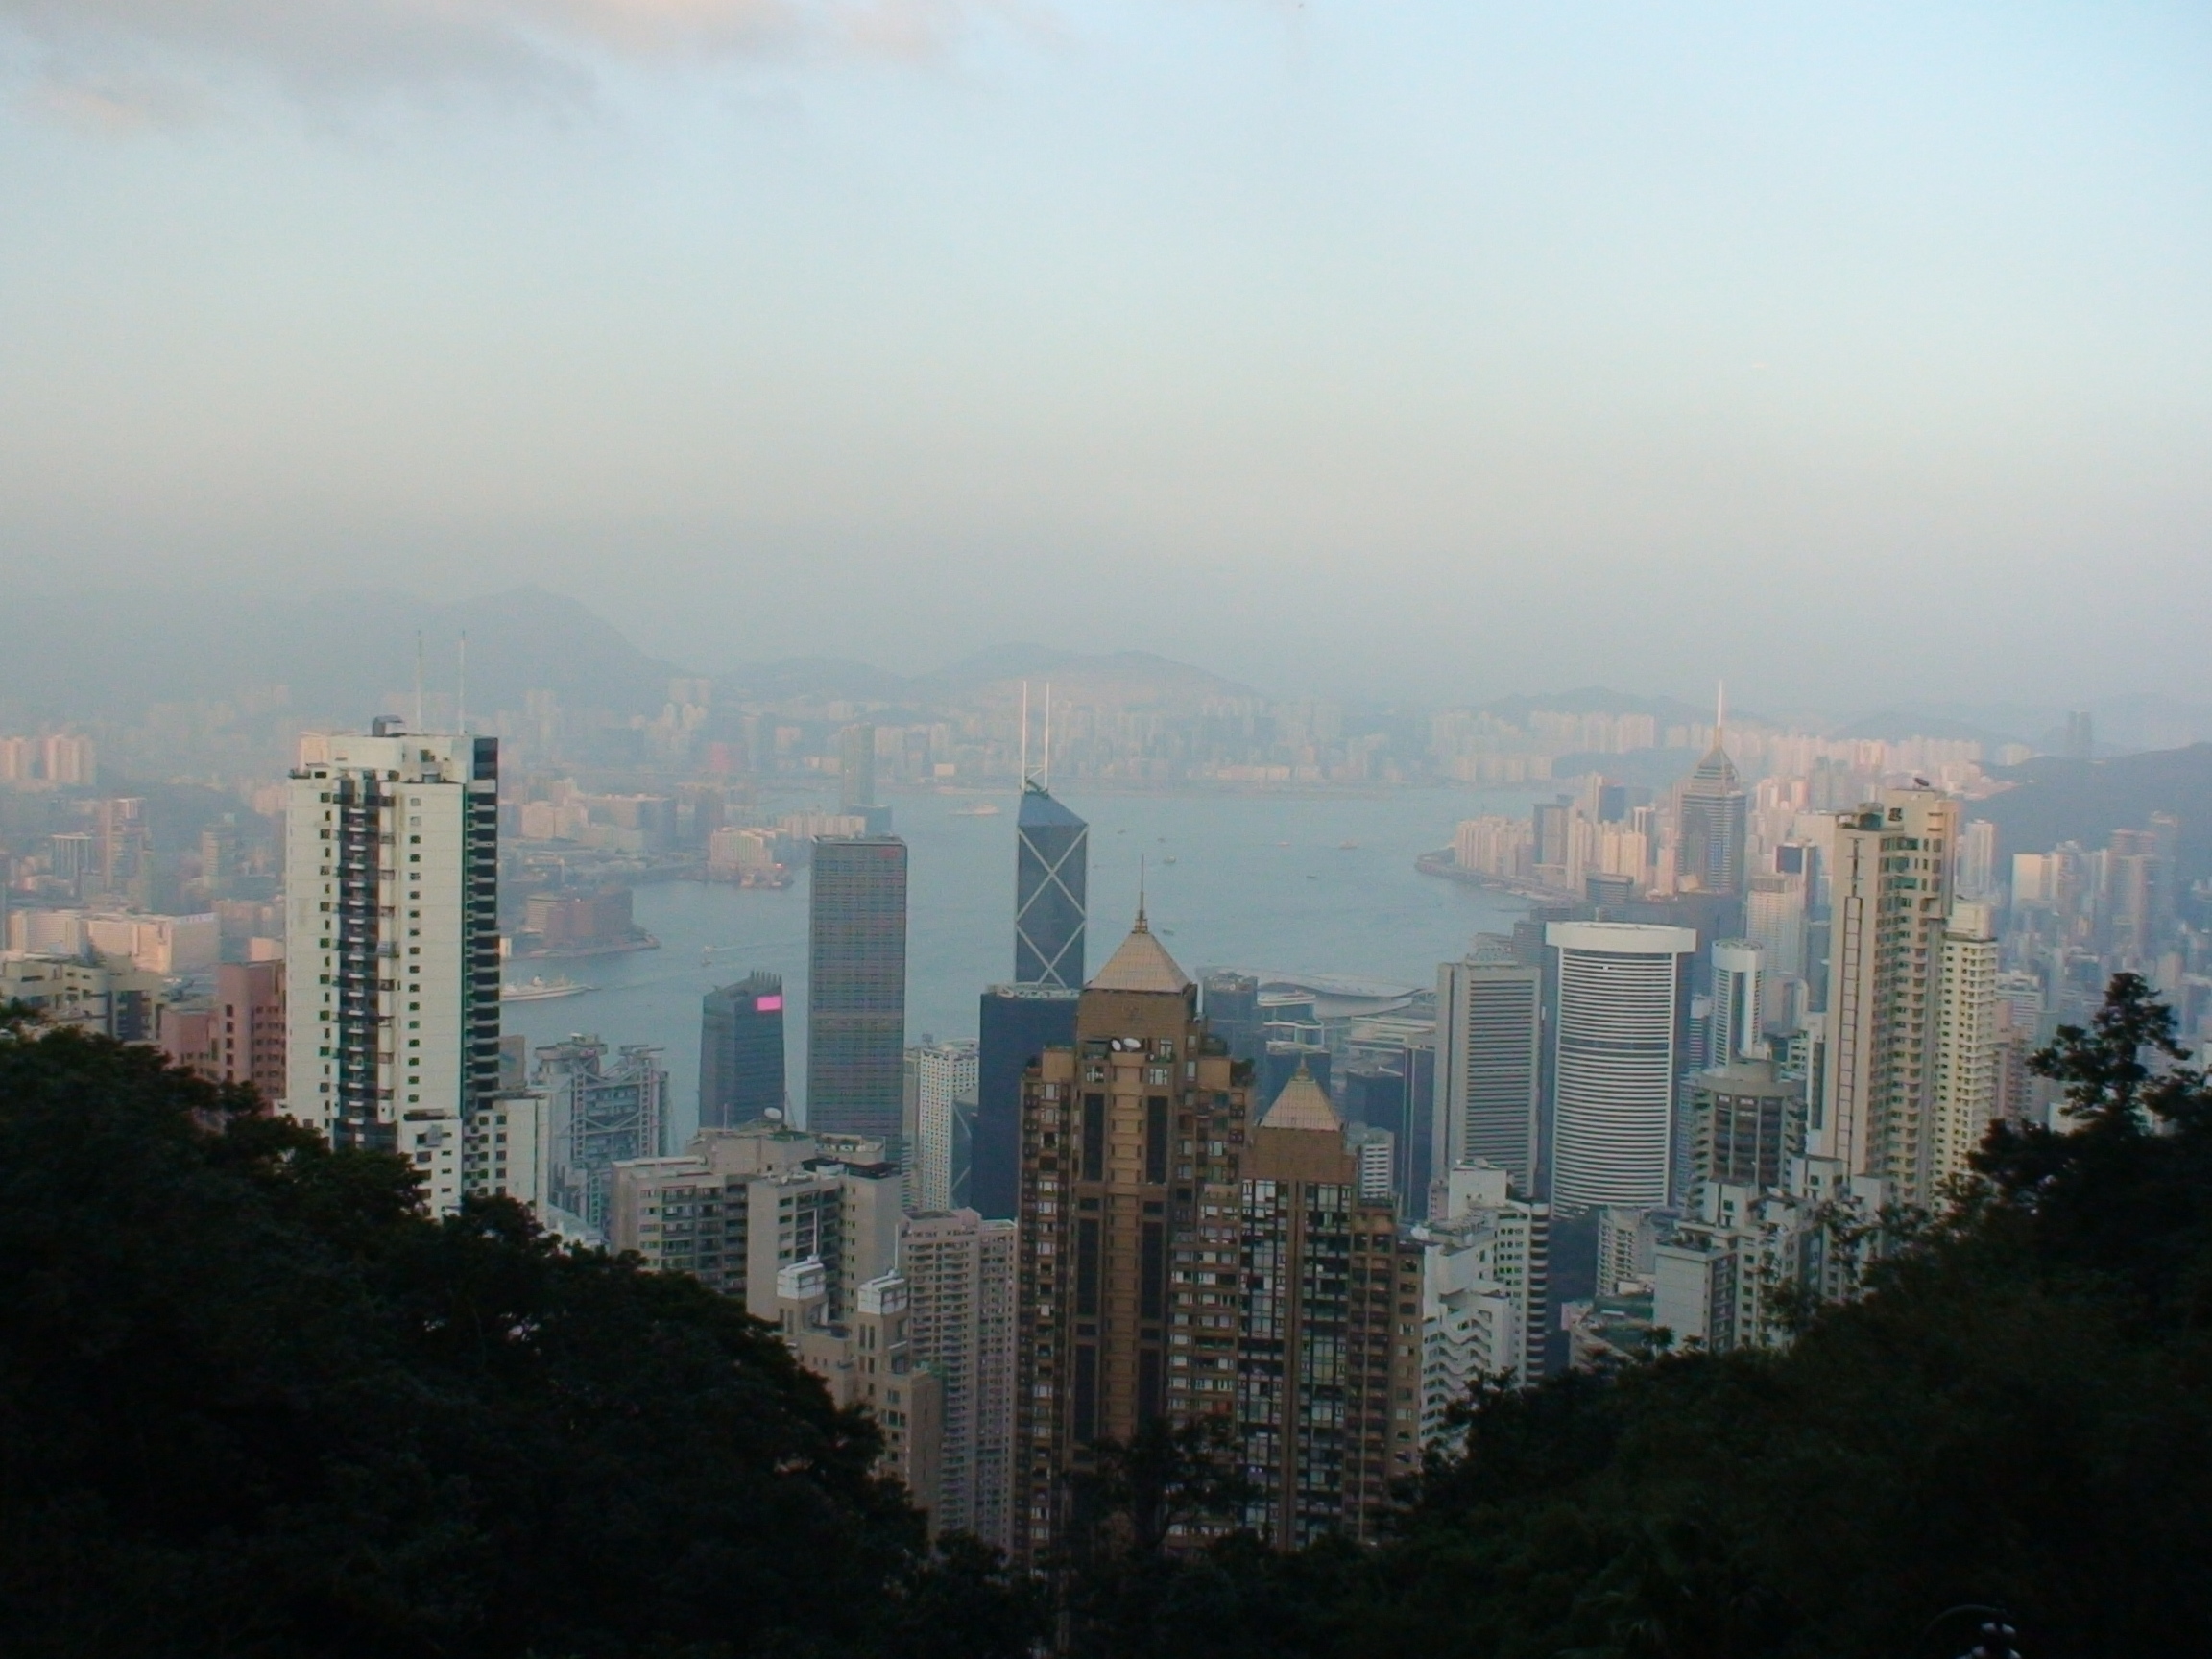 Hong Kong II